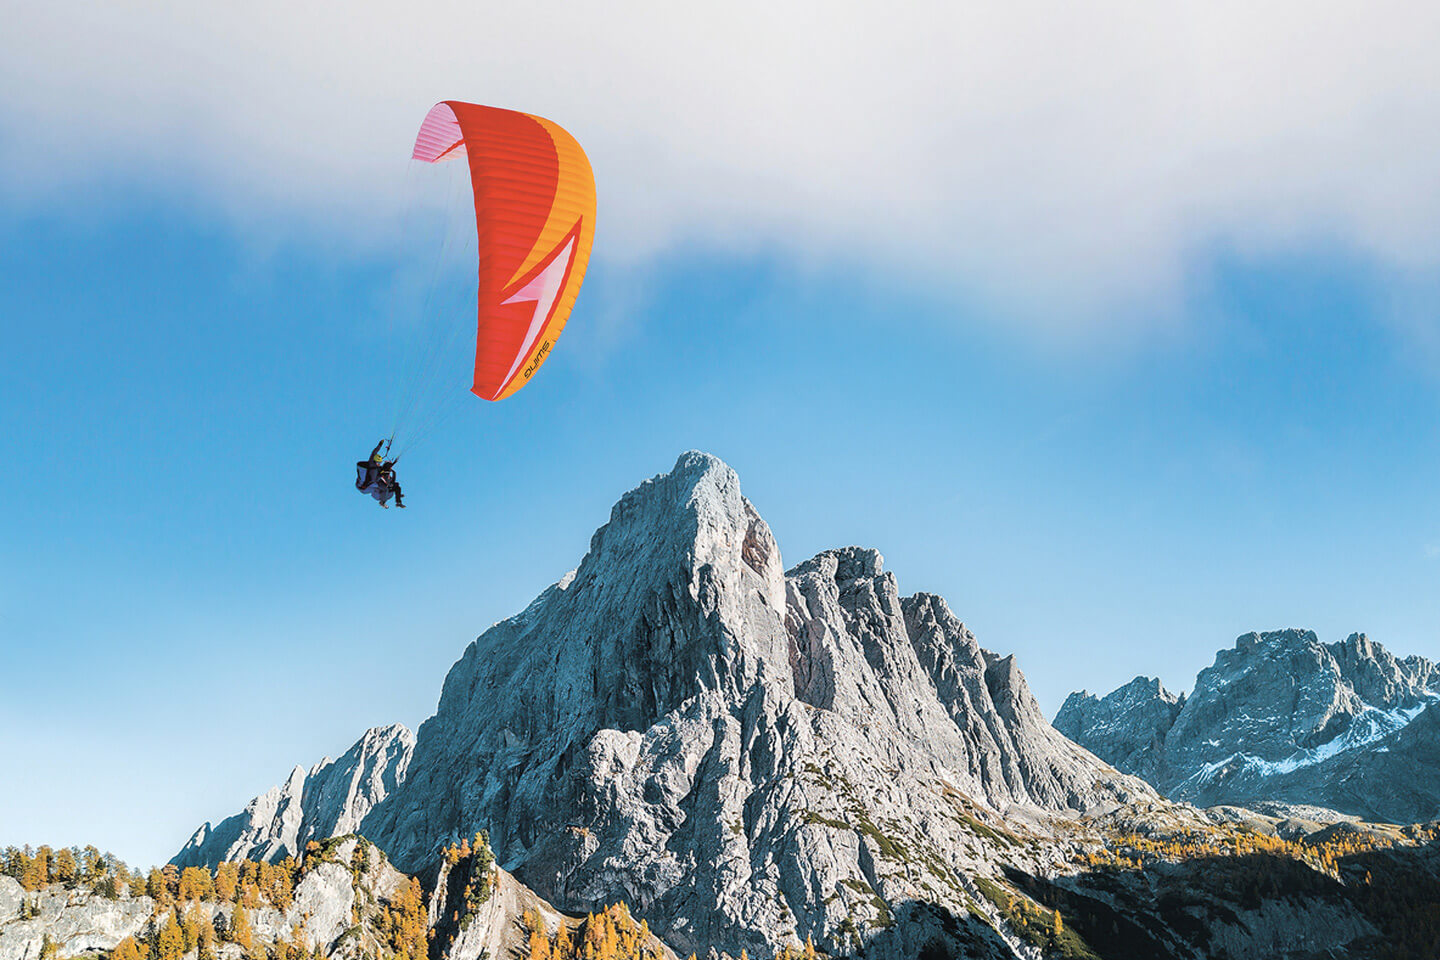 Unsere Gleitschirm-Tandemflüge in Lienz bieten ein unvergessliches Erlebnis. Fliegen Sie mit einem staatlich geprüften Tandempiloten im wunderschönen Airpark Lienzer Dolomiten in Osttirol.